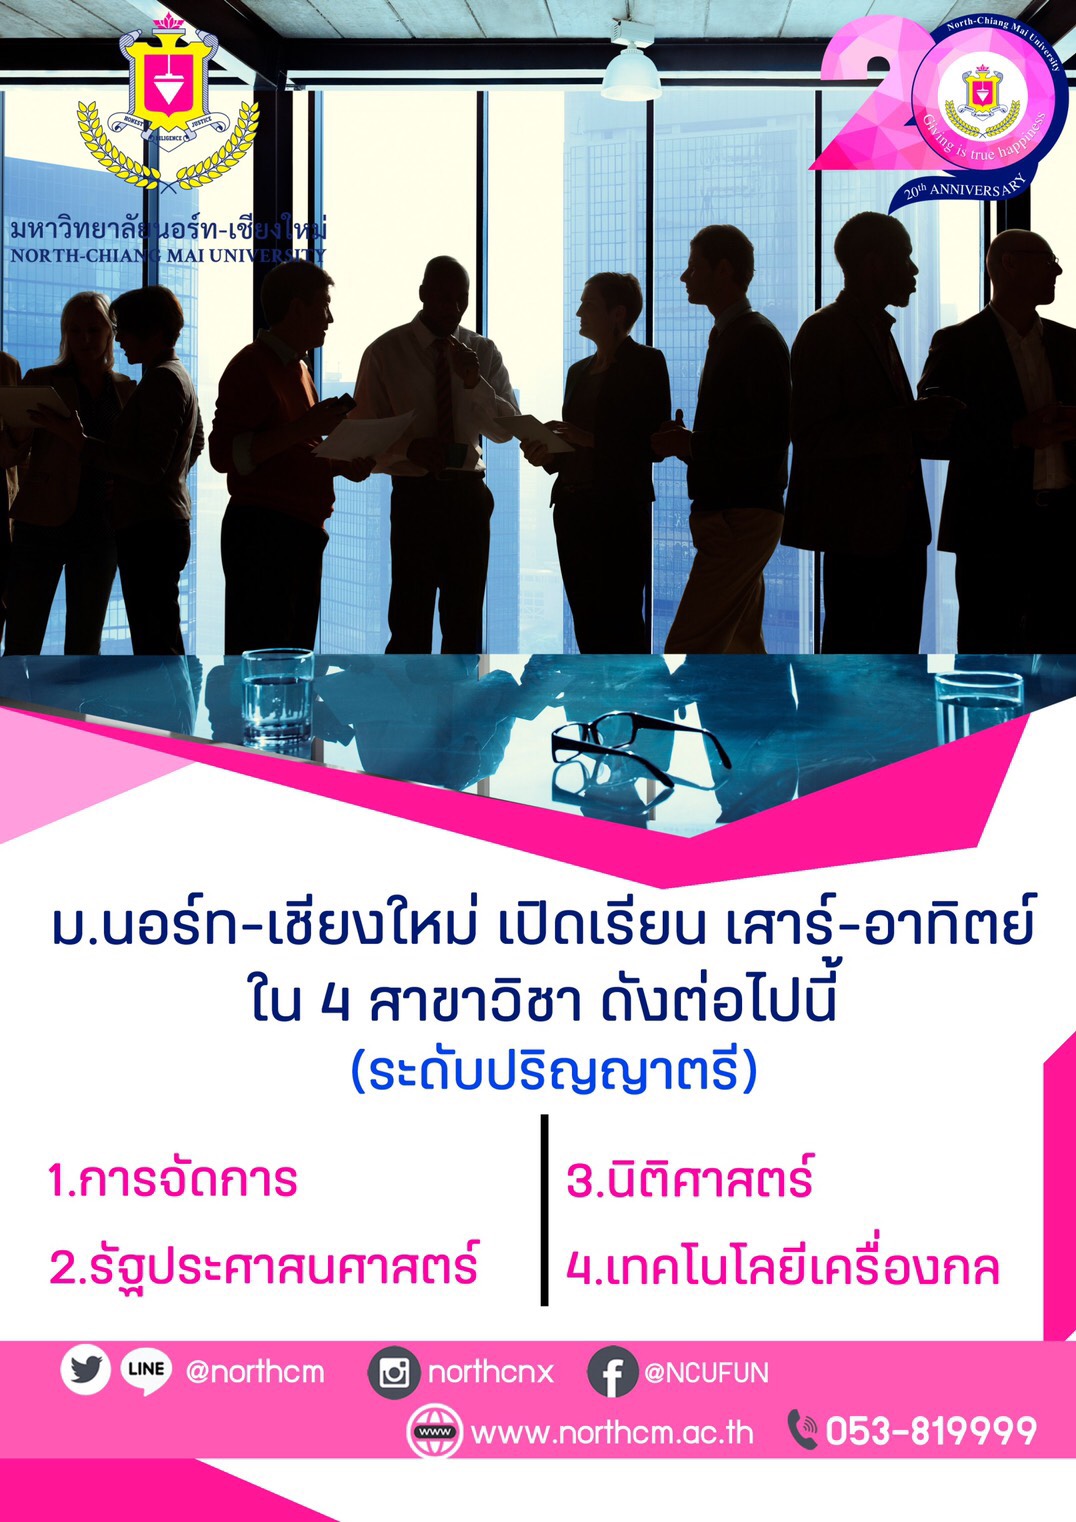 มหาวิทยาลัยนอร์ท - เชียงใหม่ เปิดรับสมัครนักศึกษาใหม่ ปีการศึกษา 2563 ( เรียนเสาร์-อาทิตย์) - Chiang Mai News